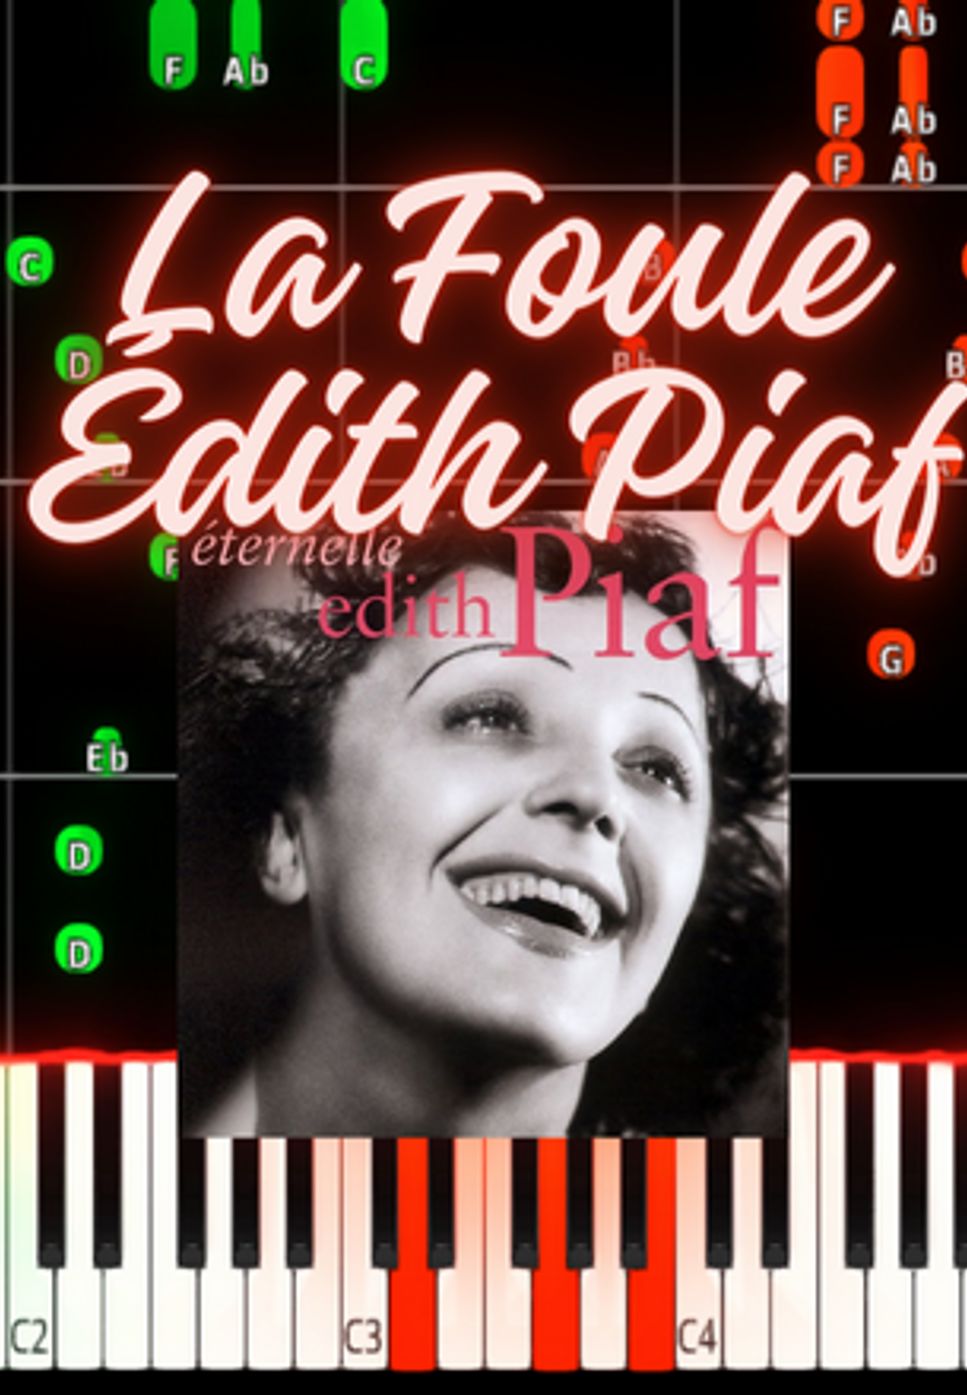 Édith Piaf - La Foule by Marco D.